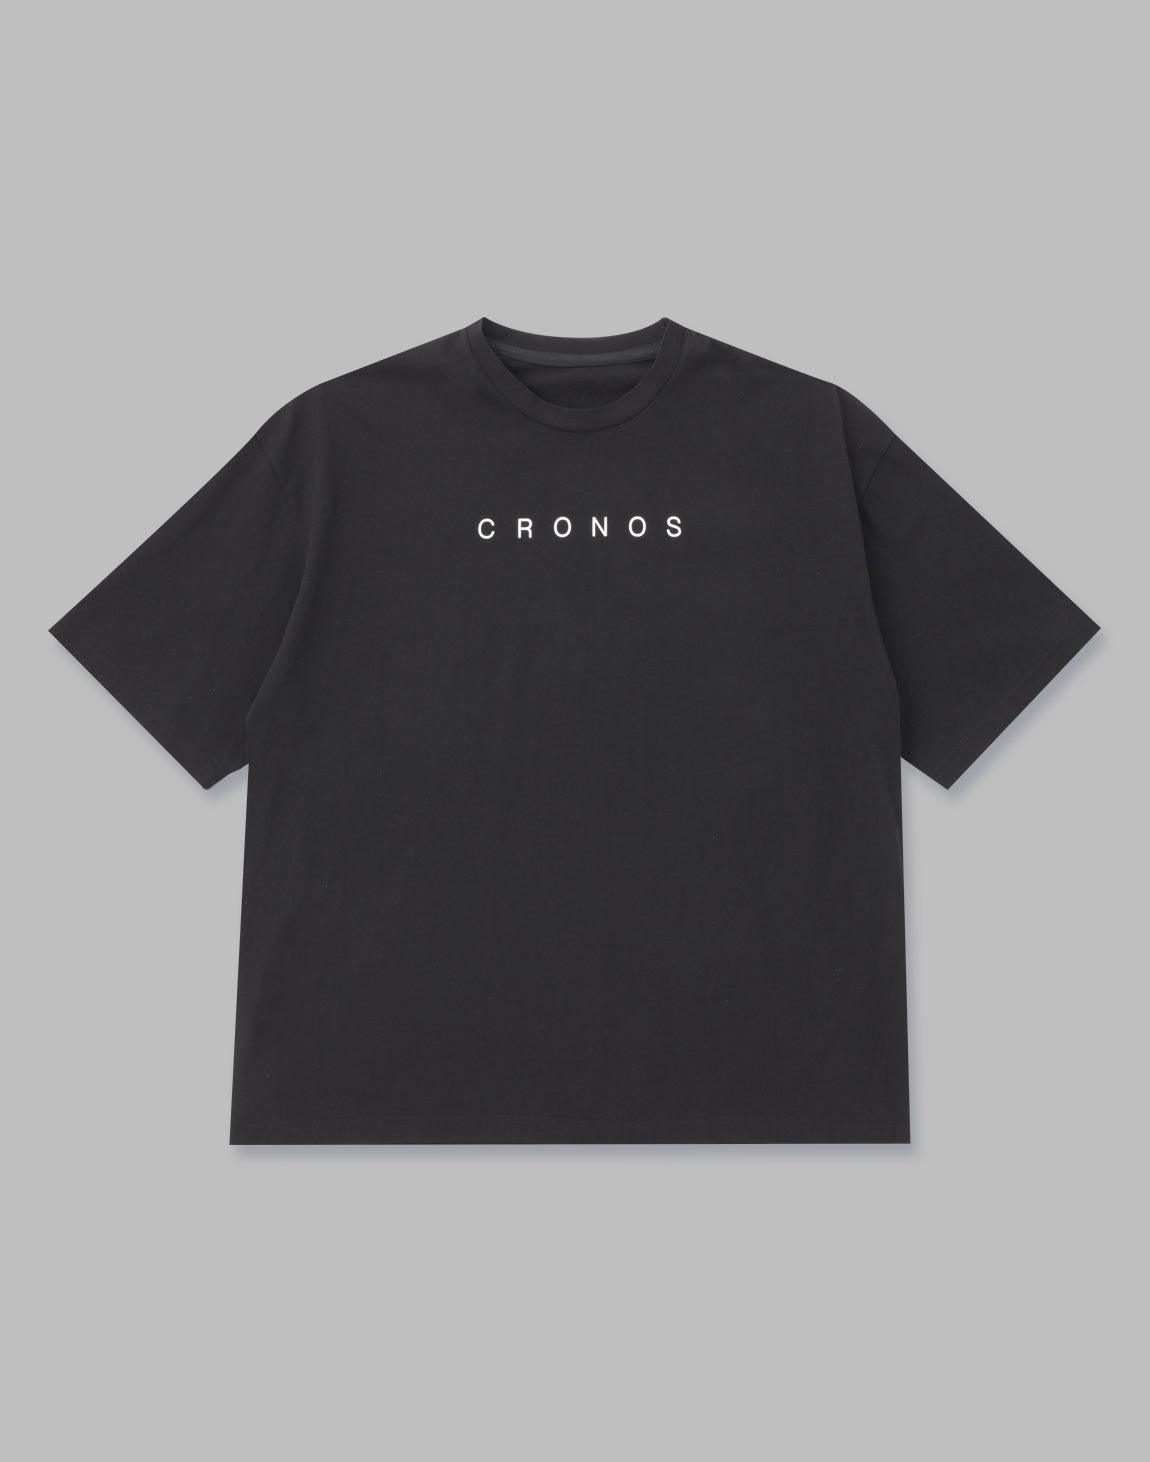 Tシャツ/カットソー(七分/長袖)cronosロングtシャツ